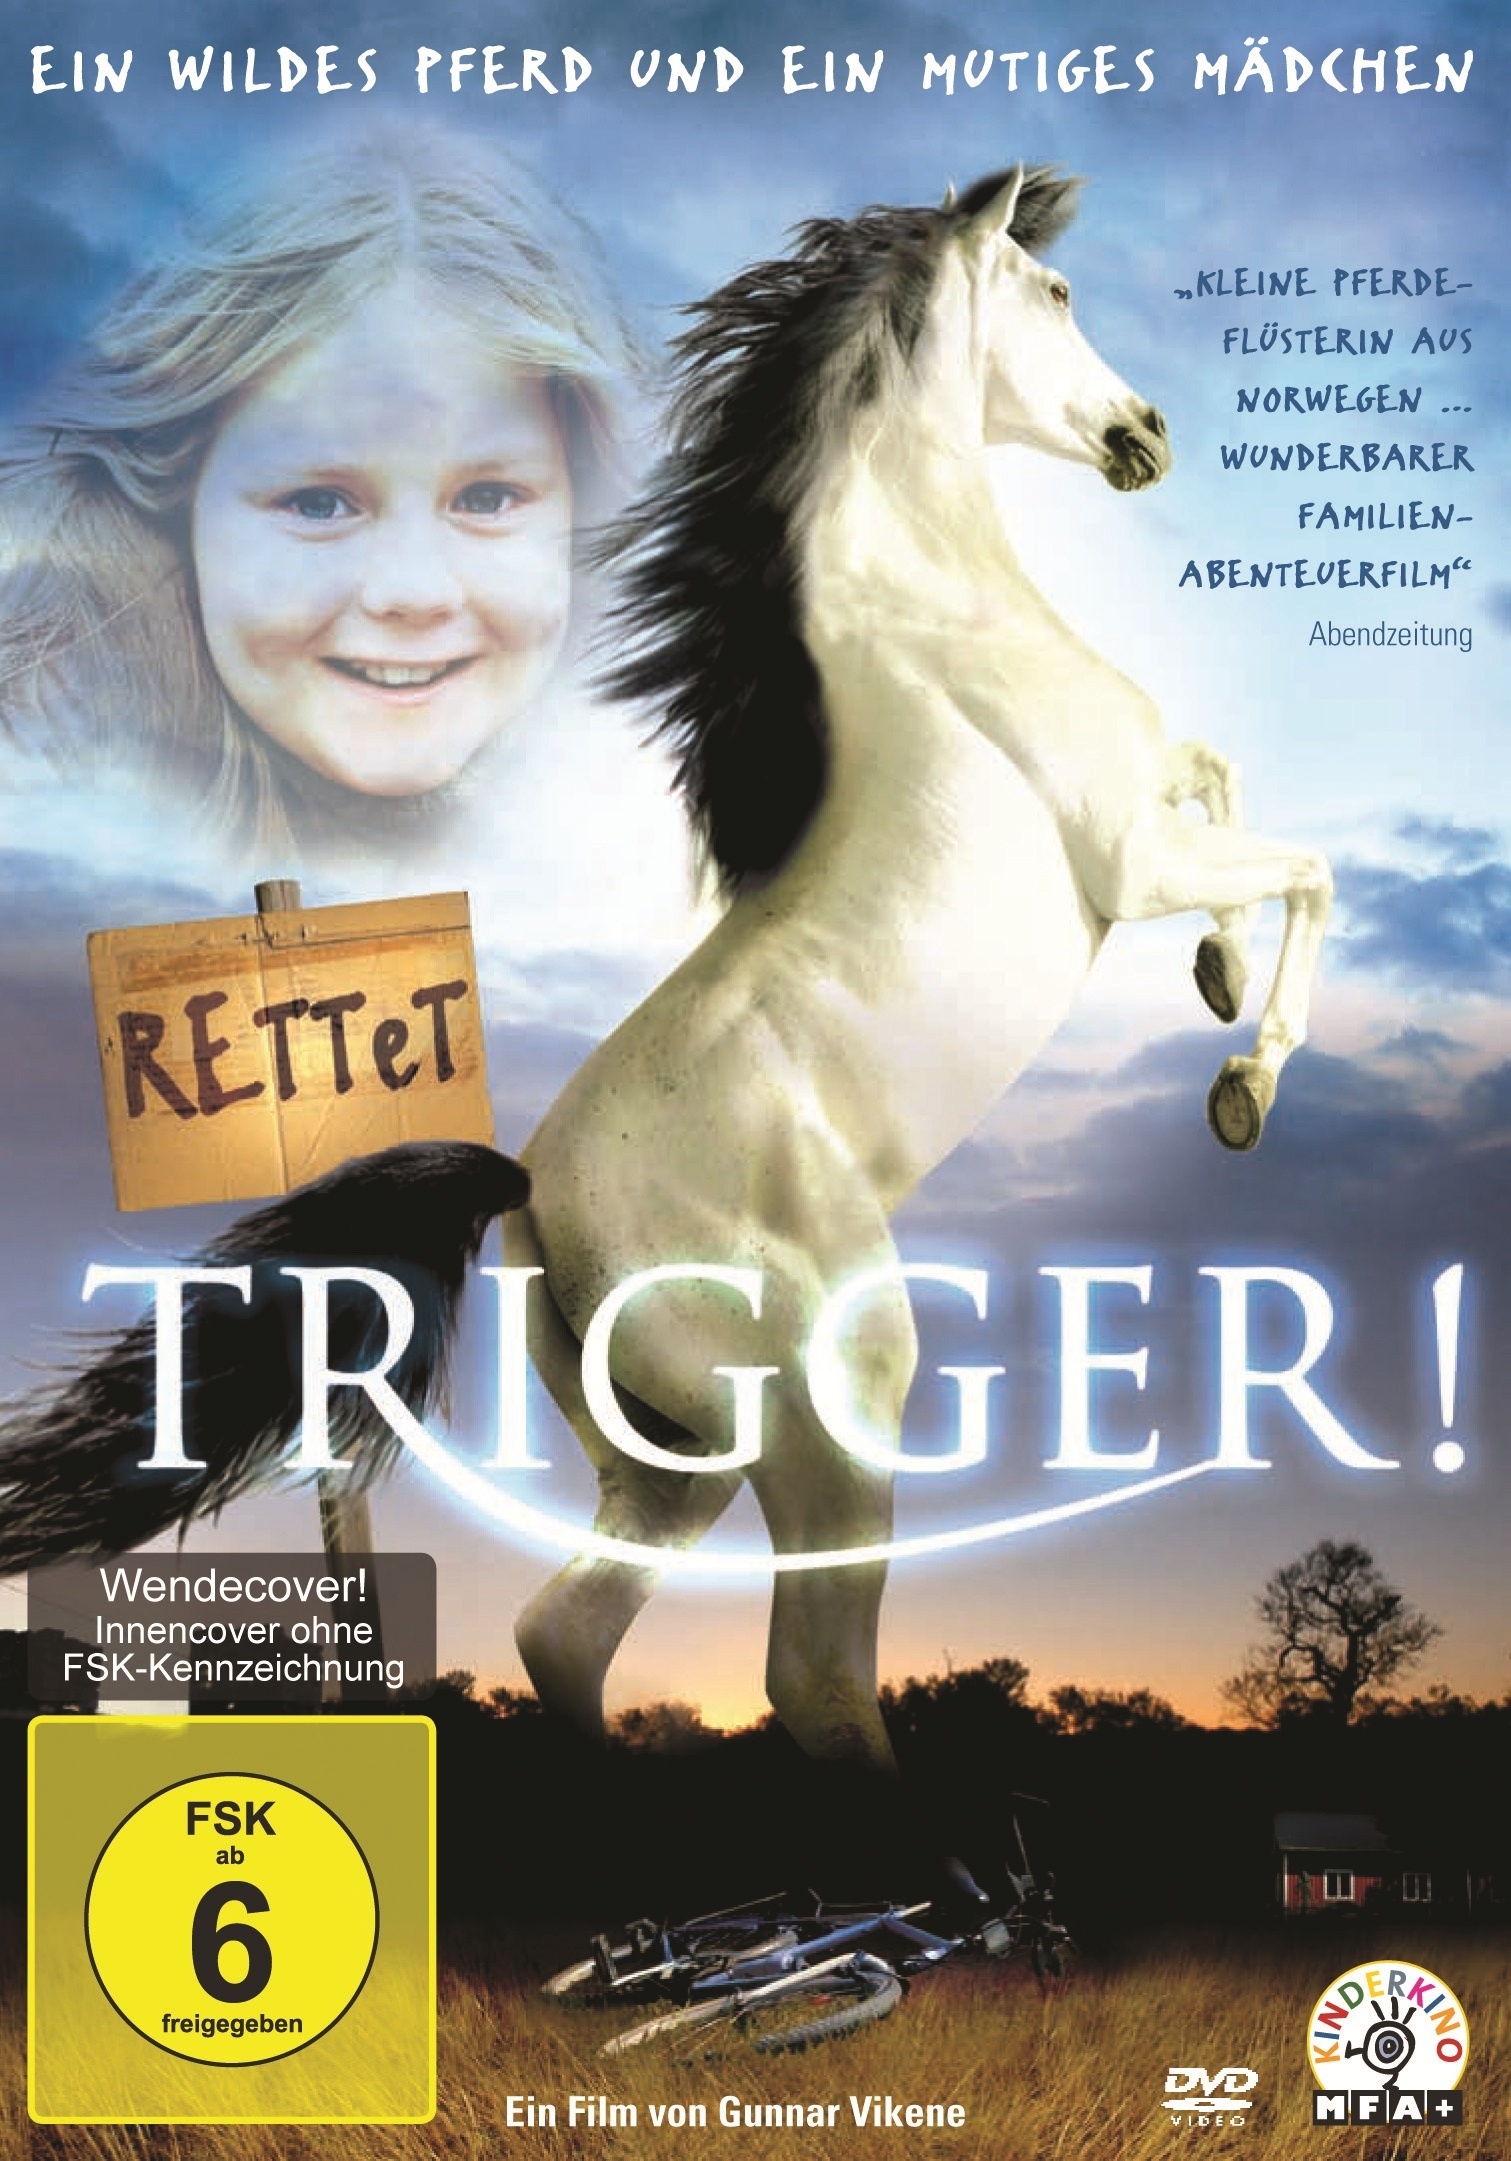 Rettet Trigger! (DVD)